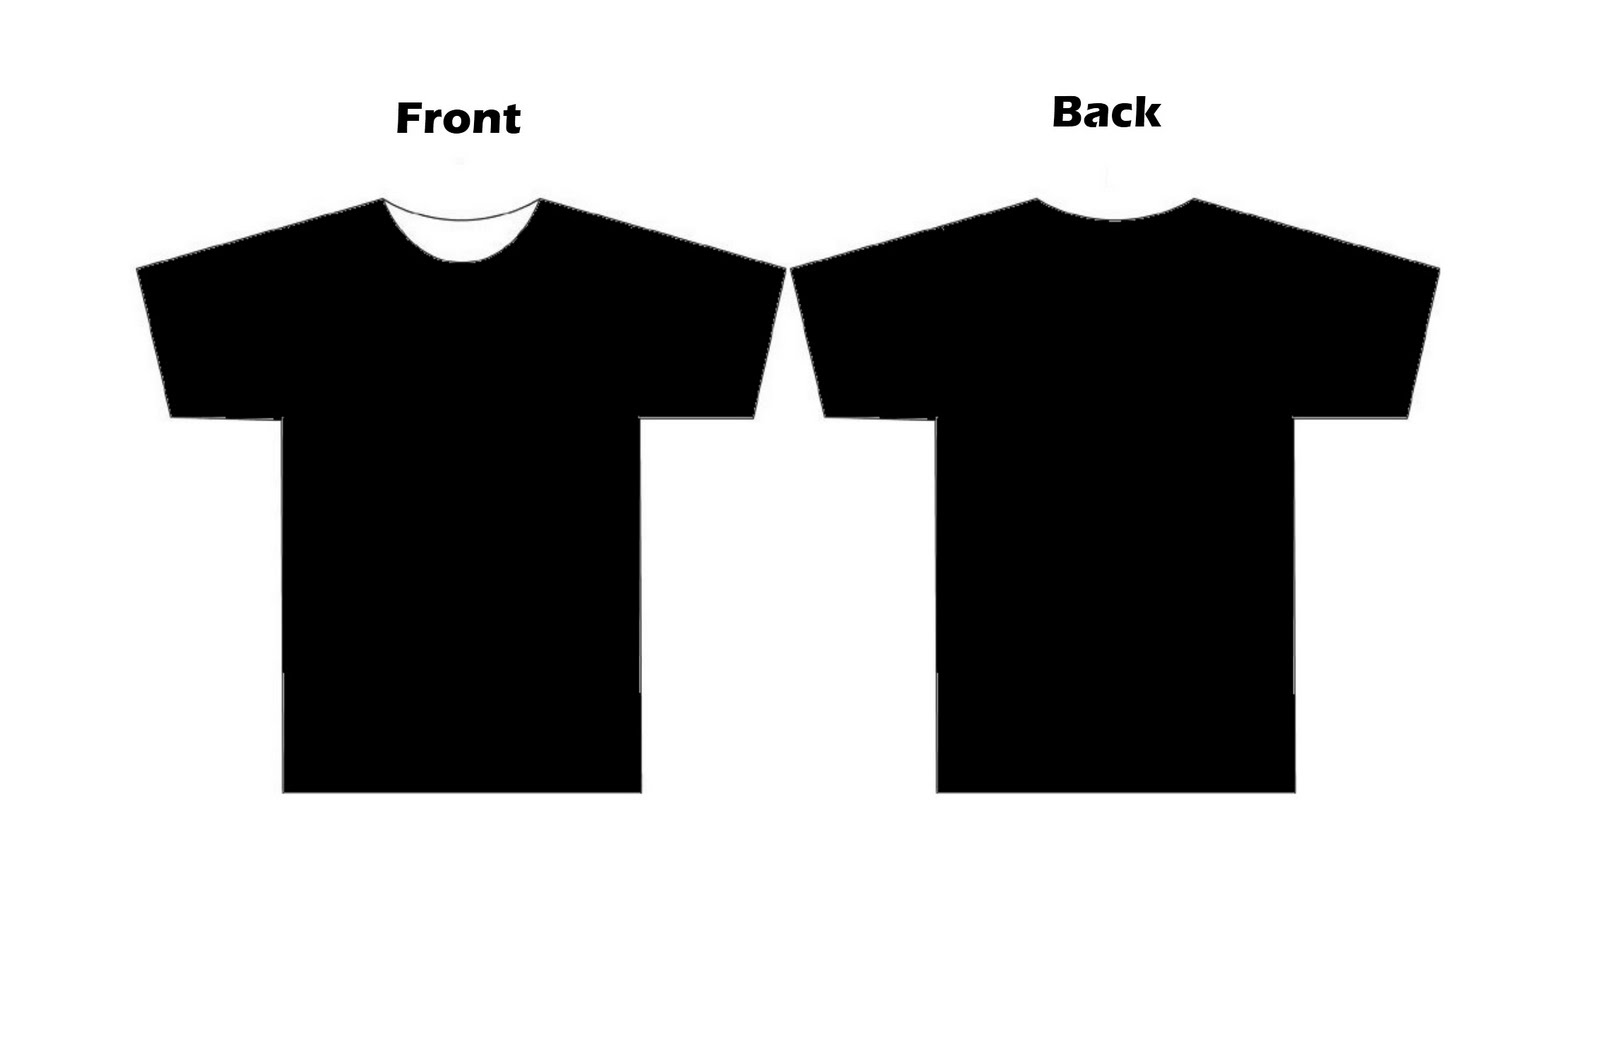 Free Printable Tshirt Template, Download Free Printable Tshirt